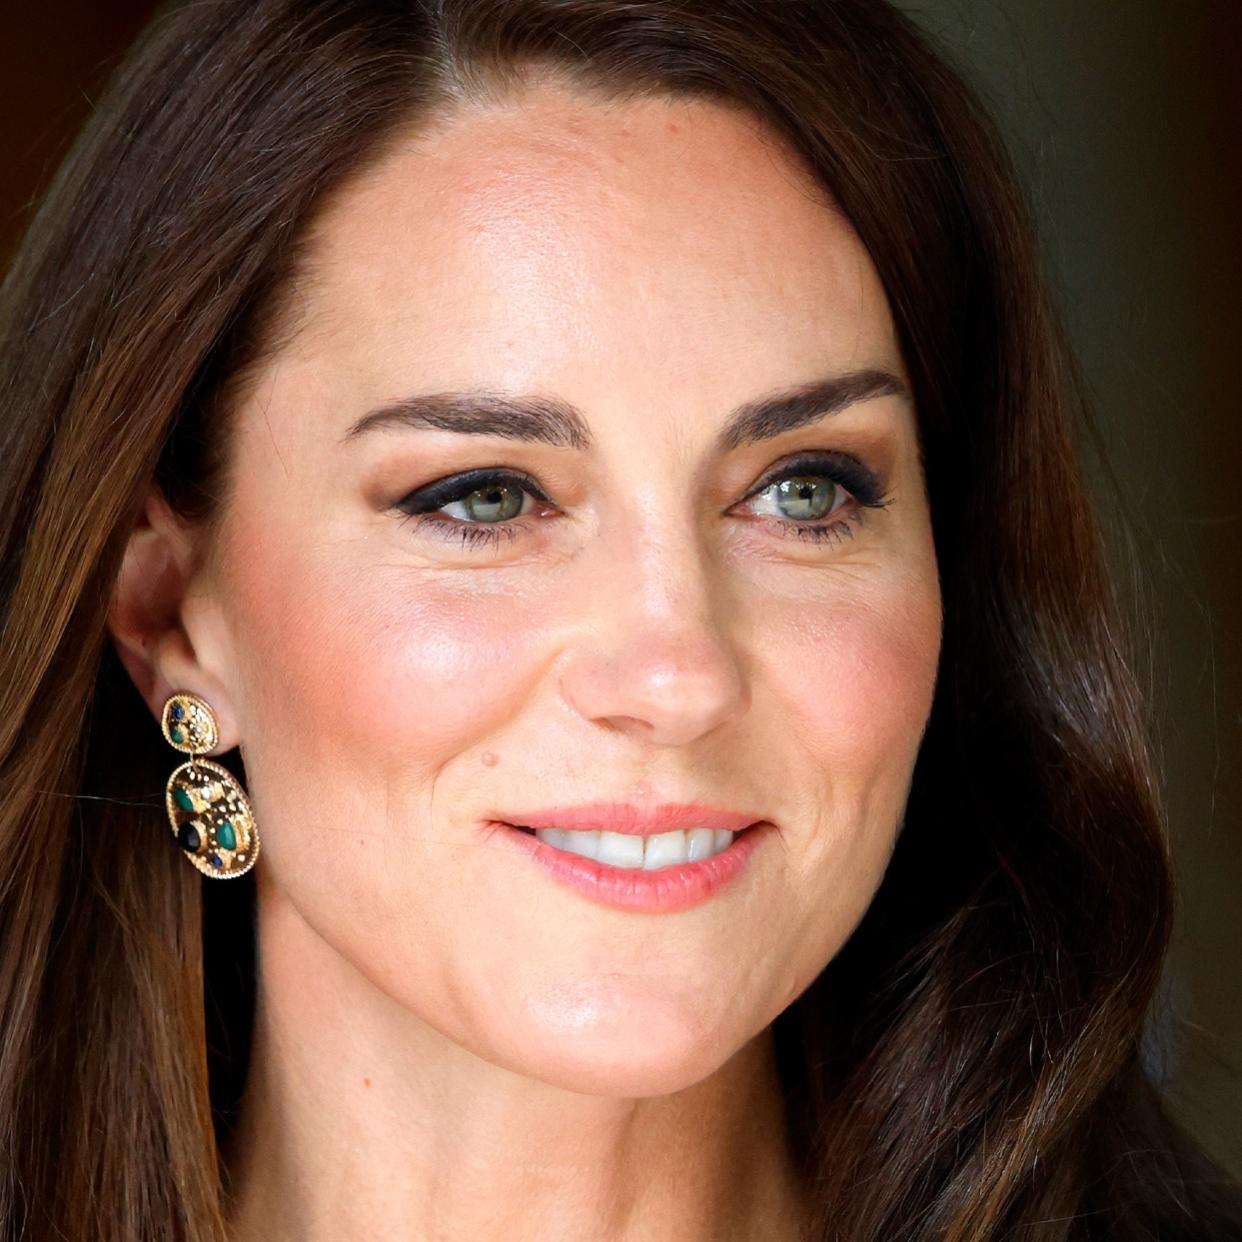  Kate Middleton close up shot  